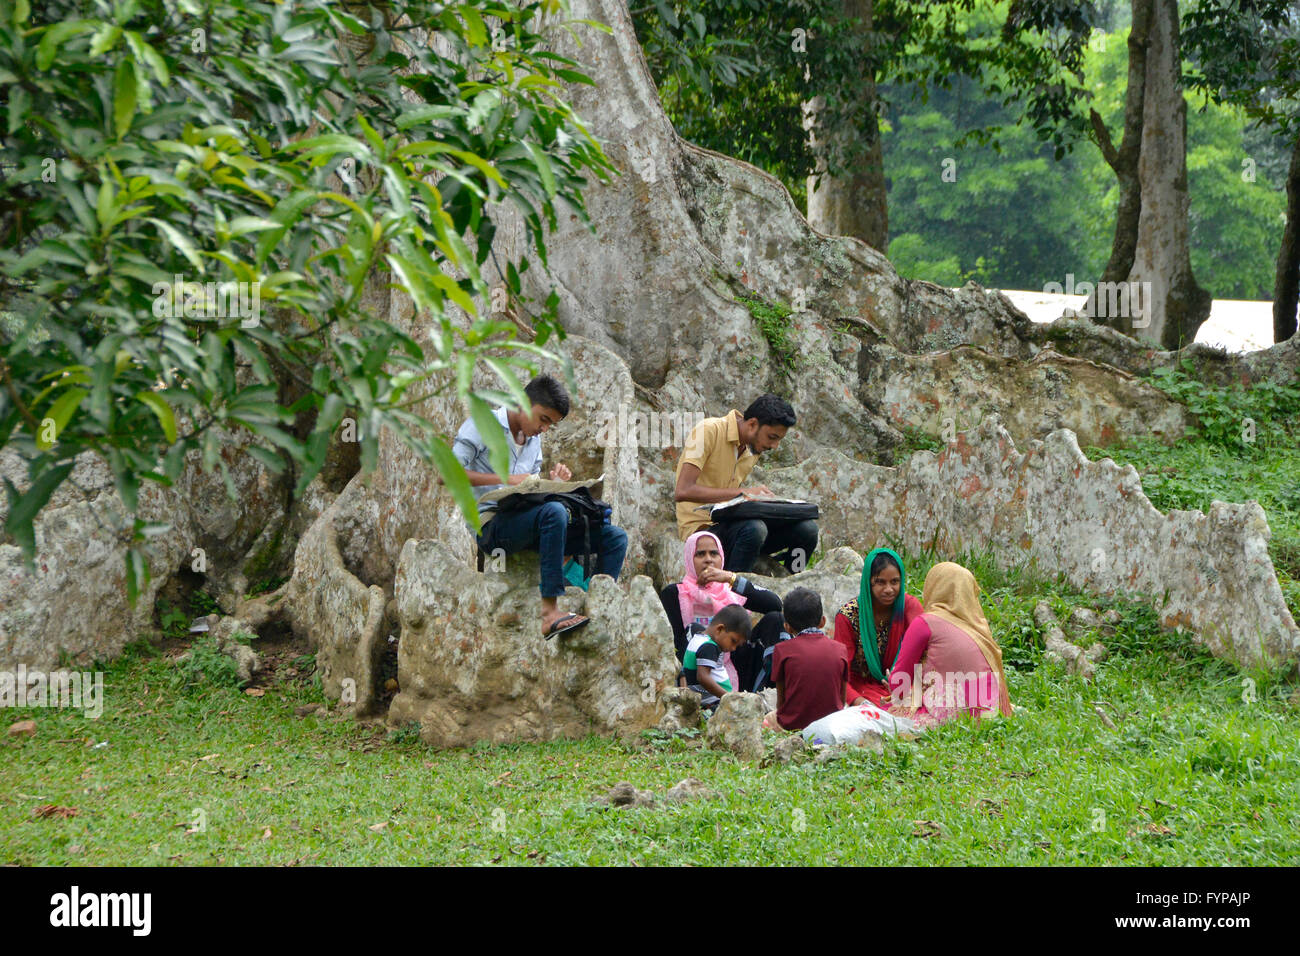 Picknick, Royal Botanical Gardens, Peradeniya, Kandy, Sri Lanka Foto Stock